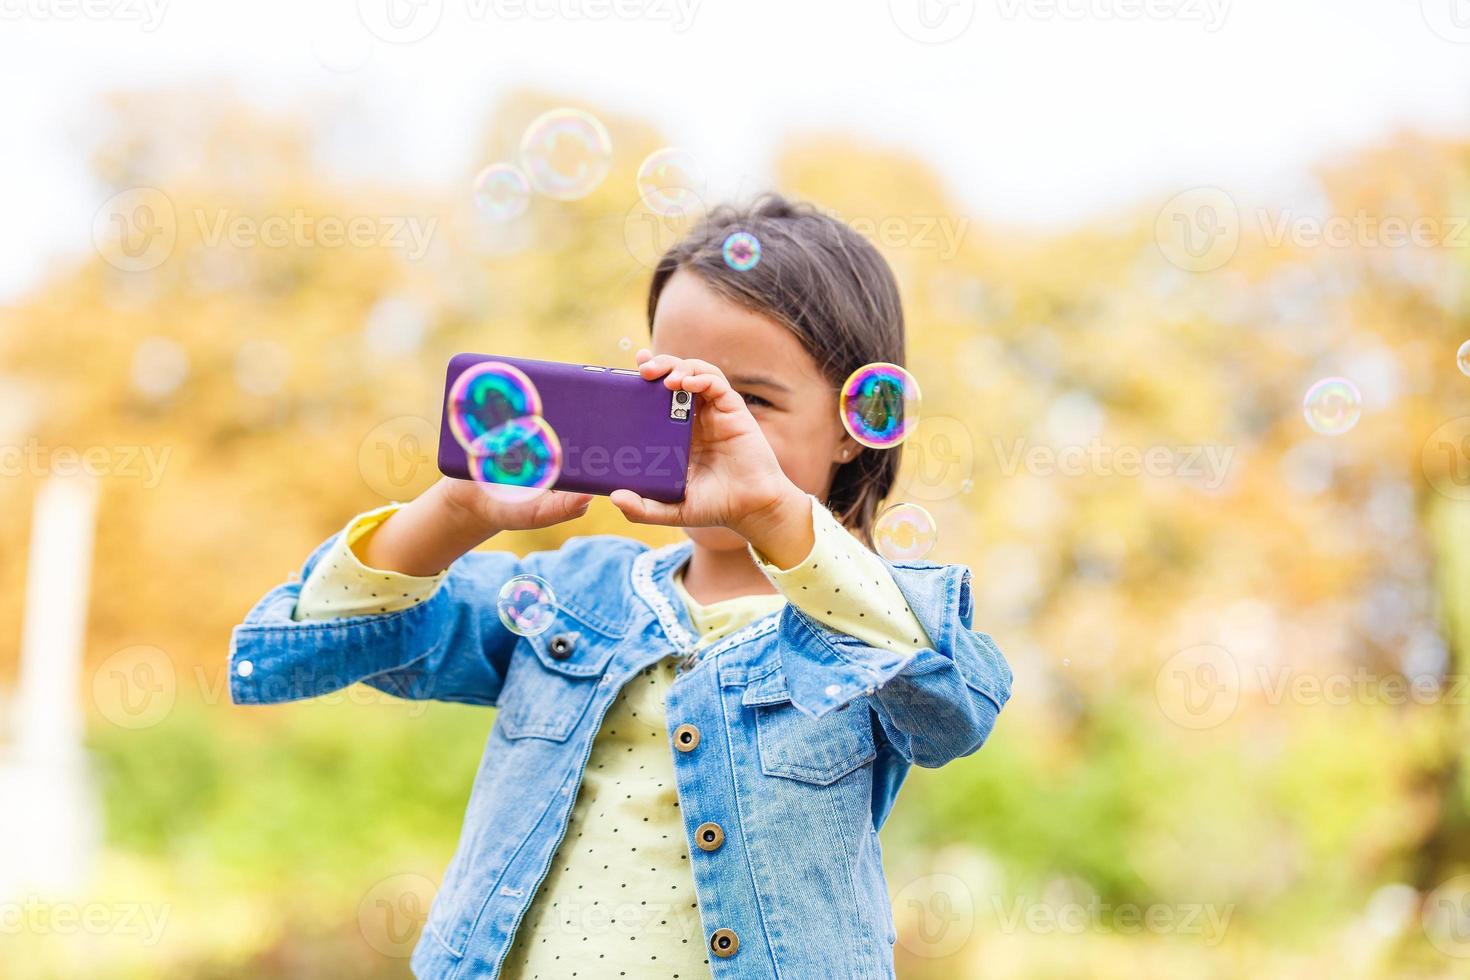 petite fille dans le parc en automne, photo selfie